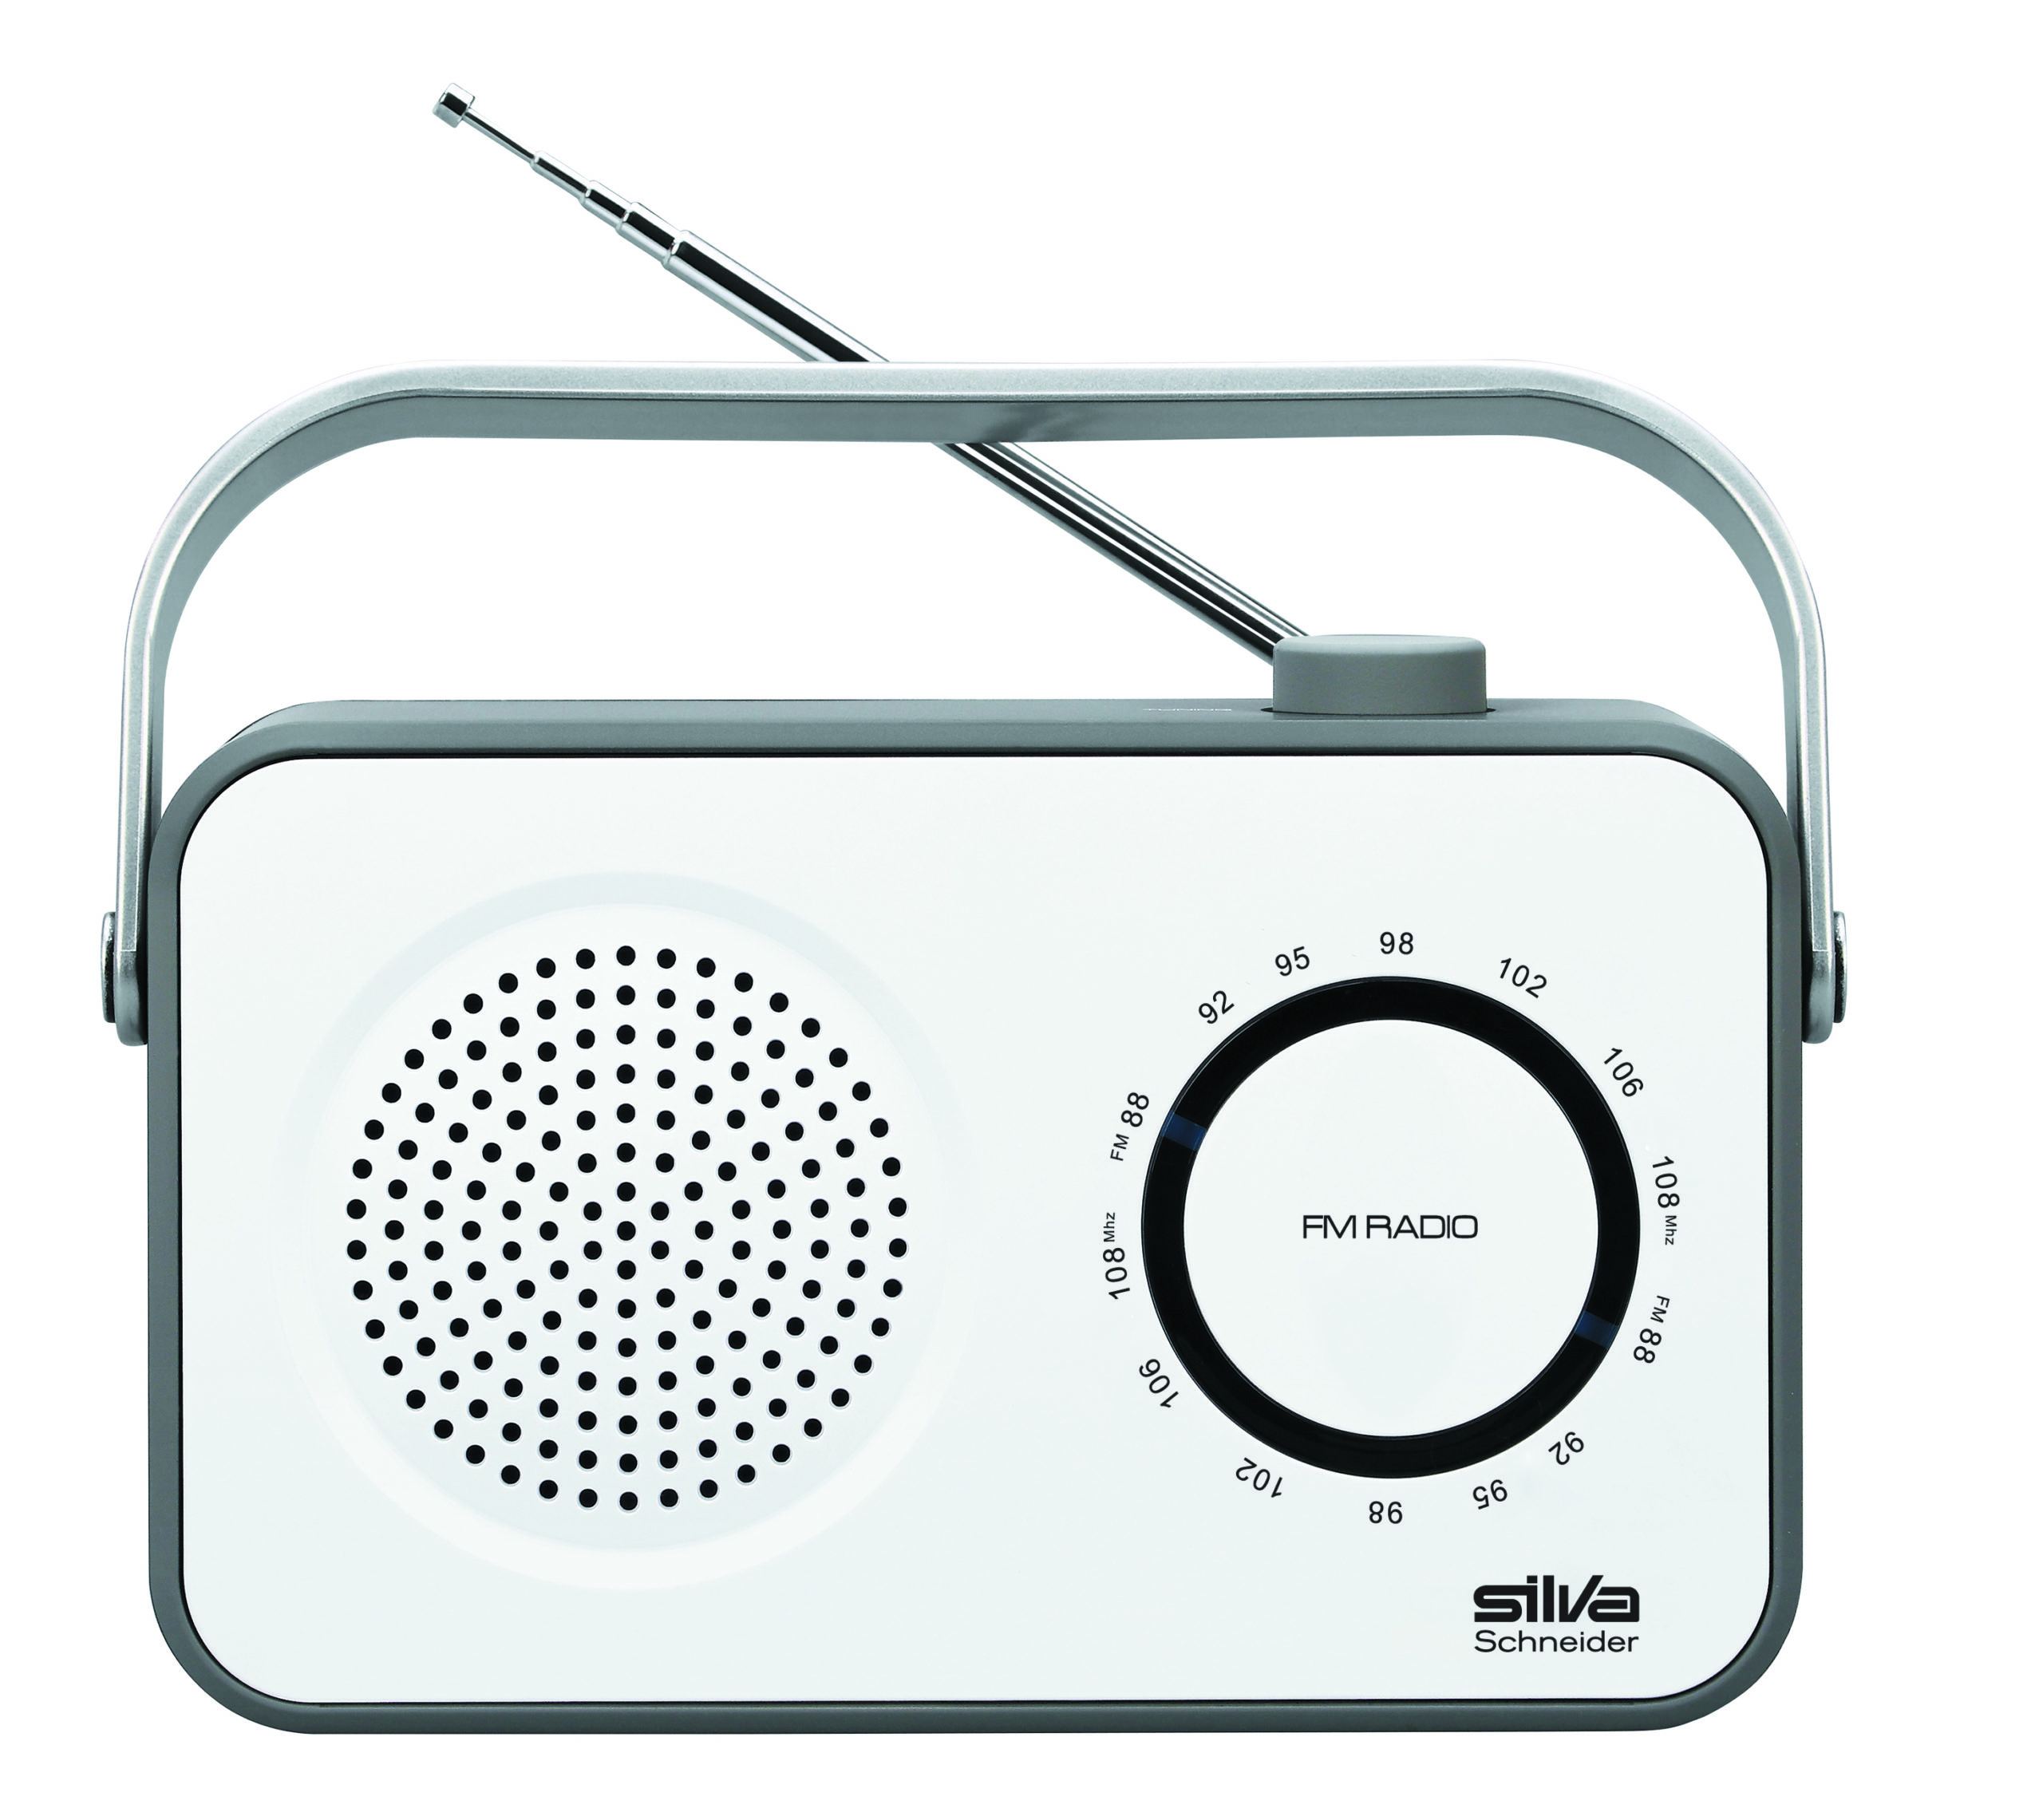 SILVA-SCHNEIDER M FM, Radio, weiß/grau 295